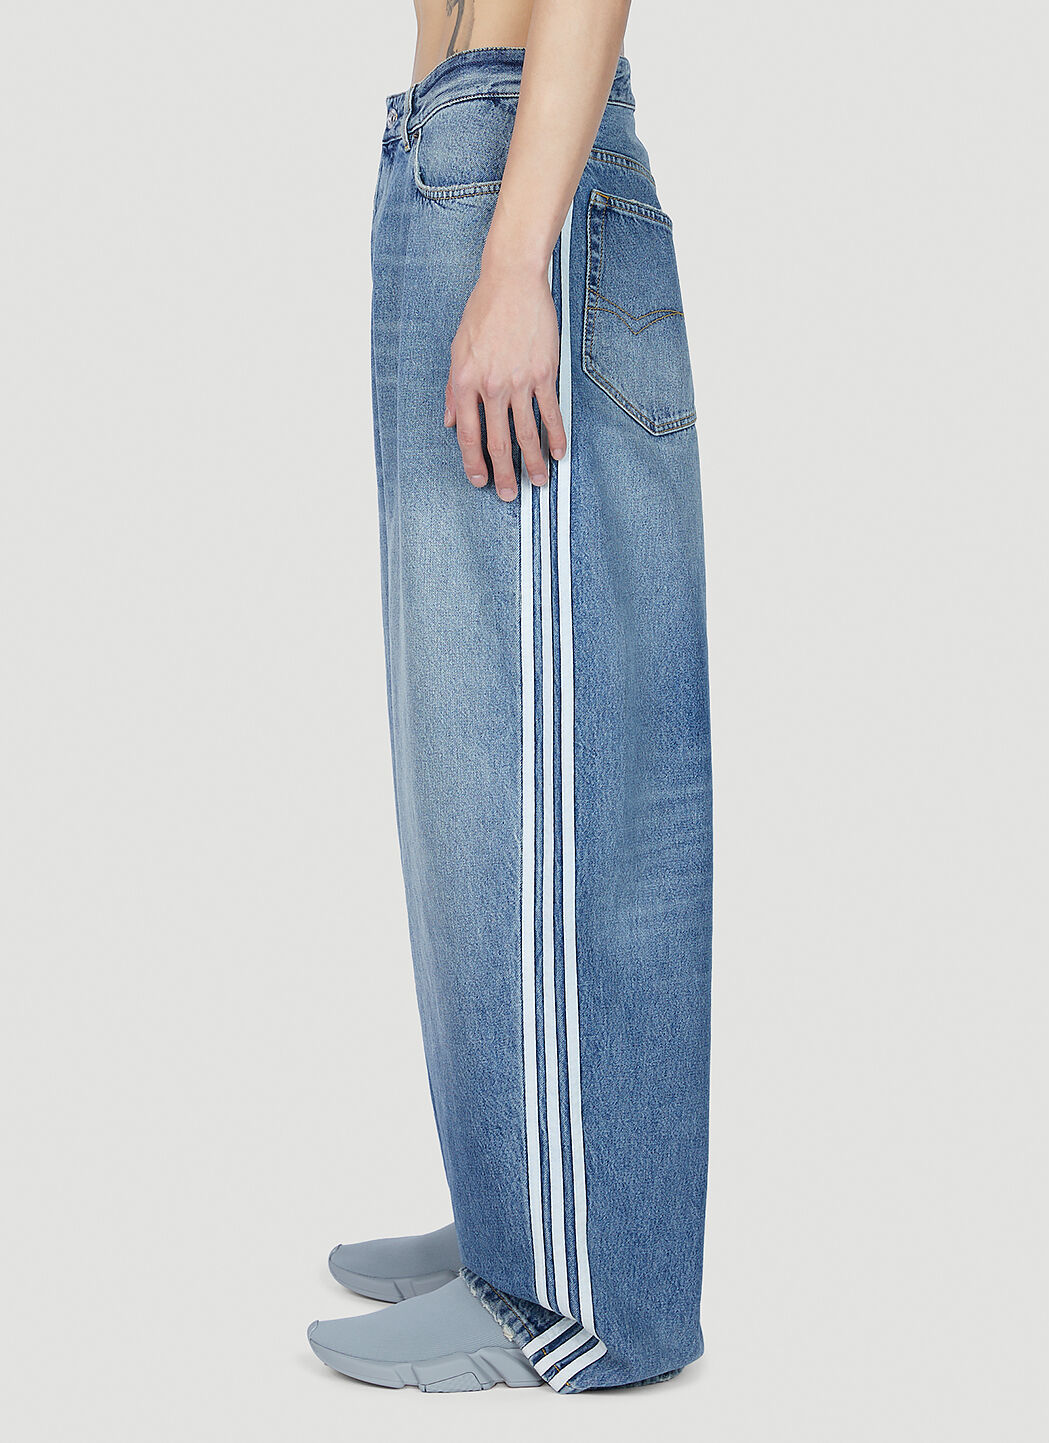 Adidas × Balenciaga The Baggy Jeans